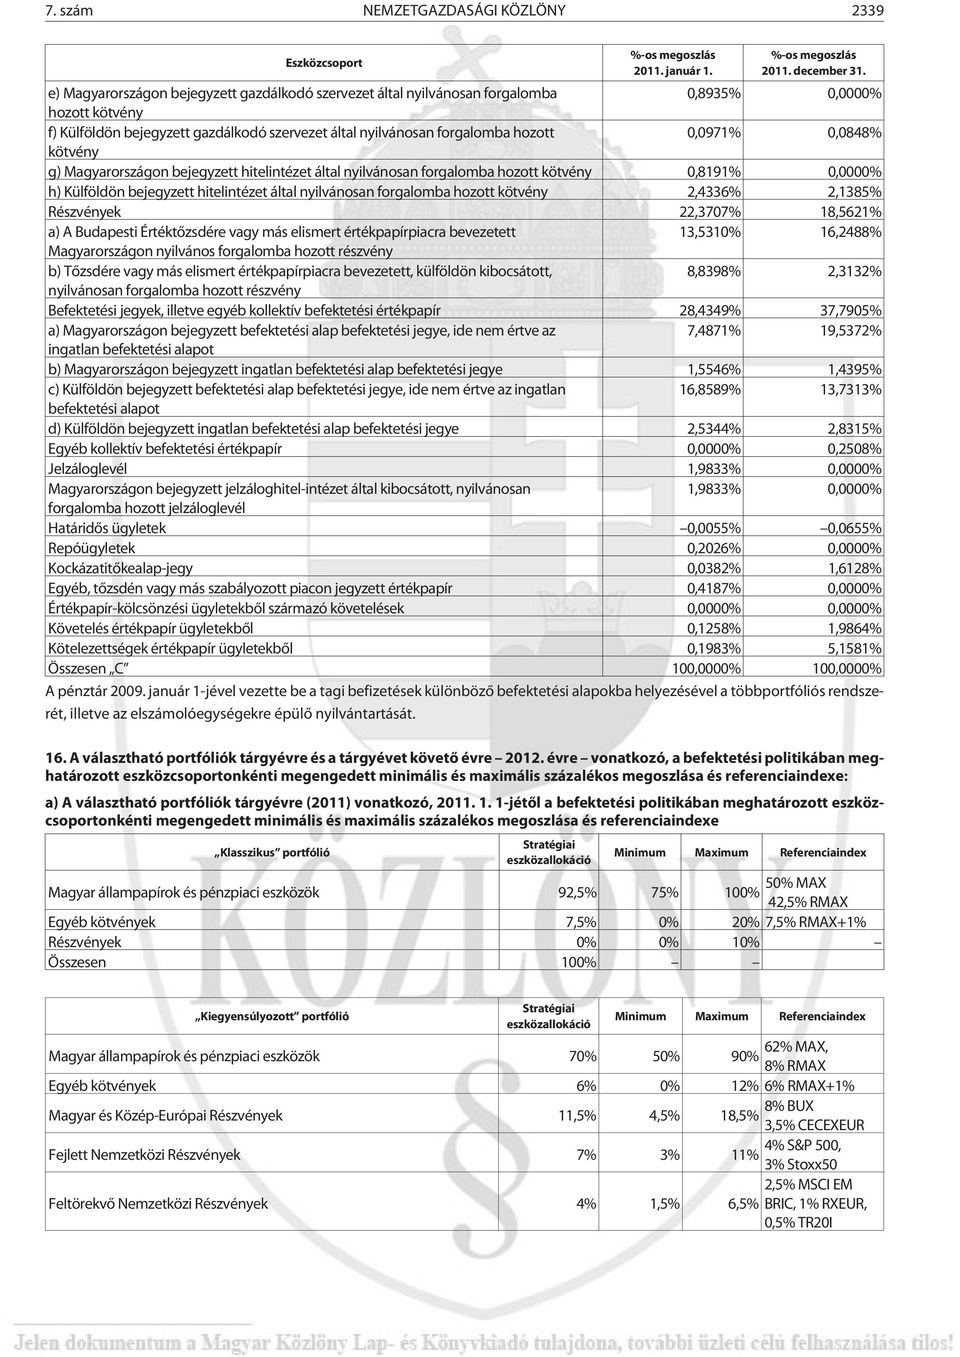 0,0848% kötvény g) Magyarországon bejegyzett hitelintézet által nyilvánosan forgalomba hozott kötvény 0,8191% 0,0000% h) Külföldön bejegyzett hitelintézet által nyilvánosan forgalomba hozott kötvény